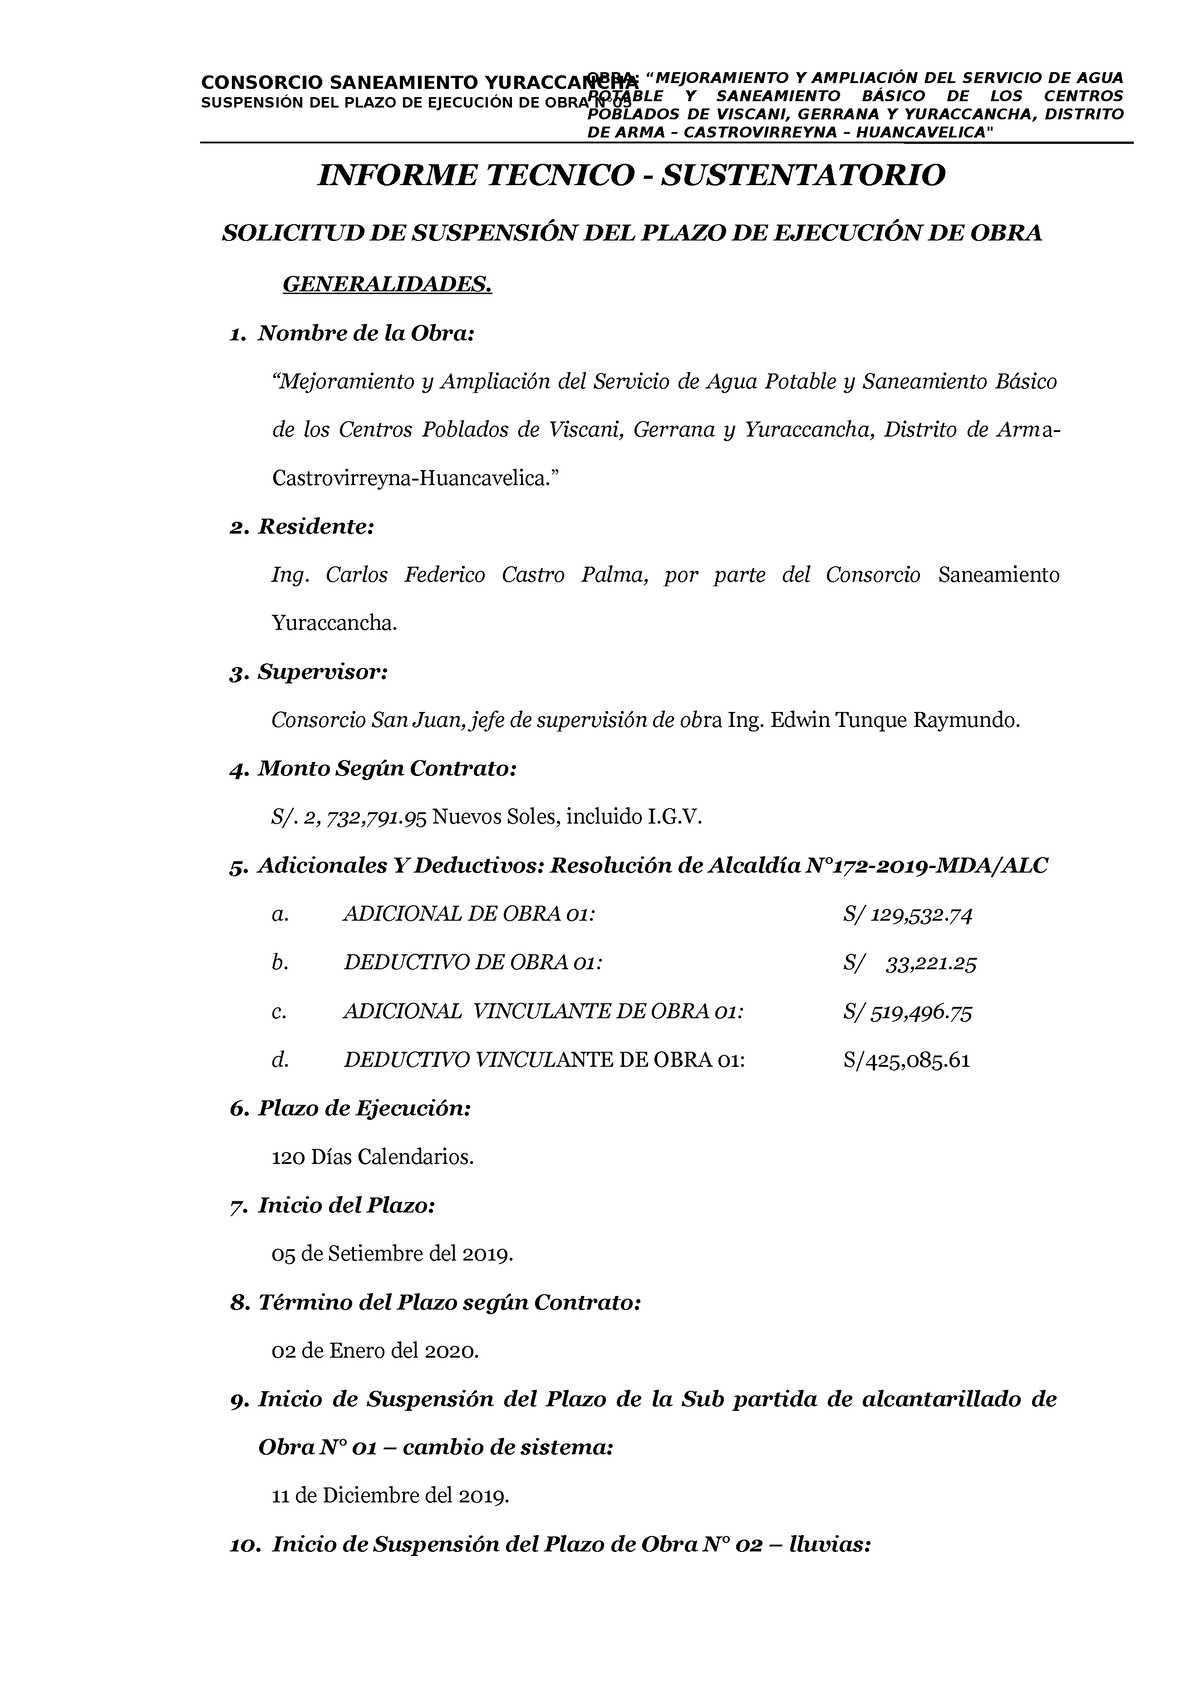 2. Informe de Suspensión de Plazo de Obra N°02 - CONSORCIO SANEAMIENTO  YURACCANCHASUSPENSIÓN DEL - Studocu